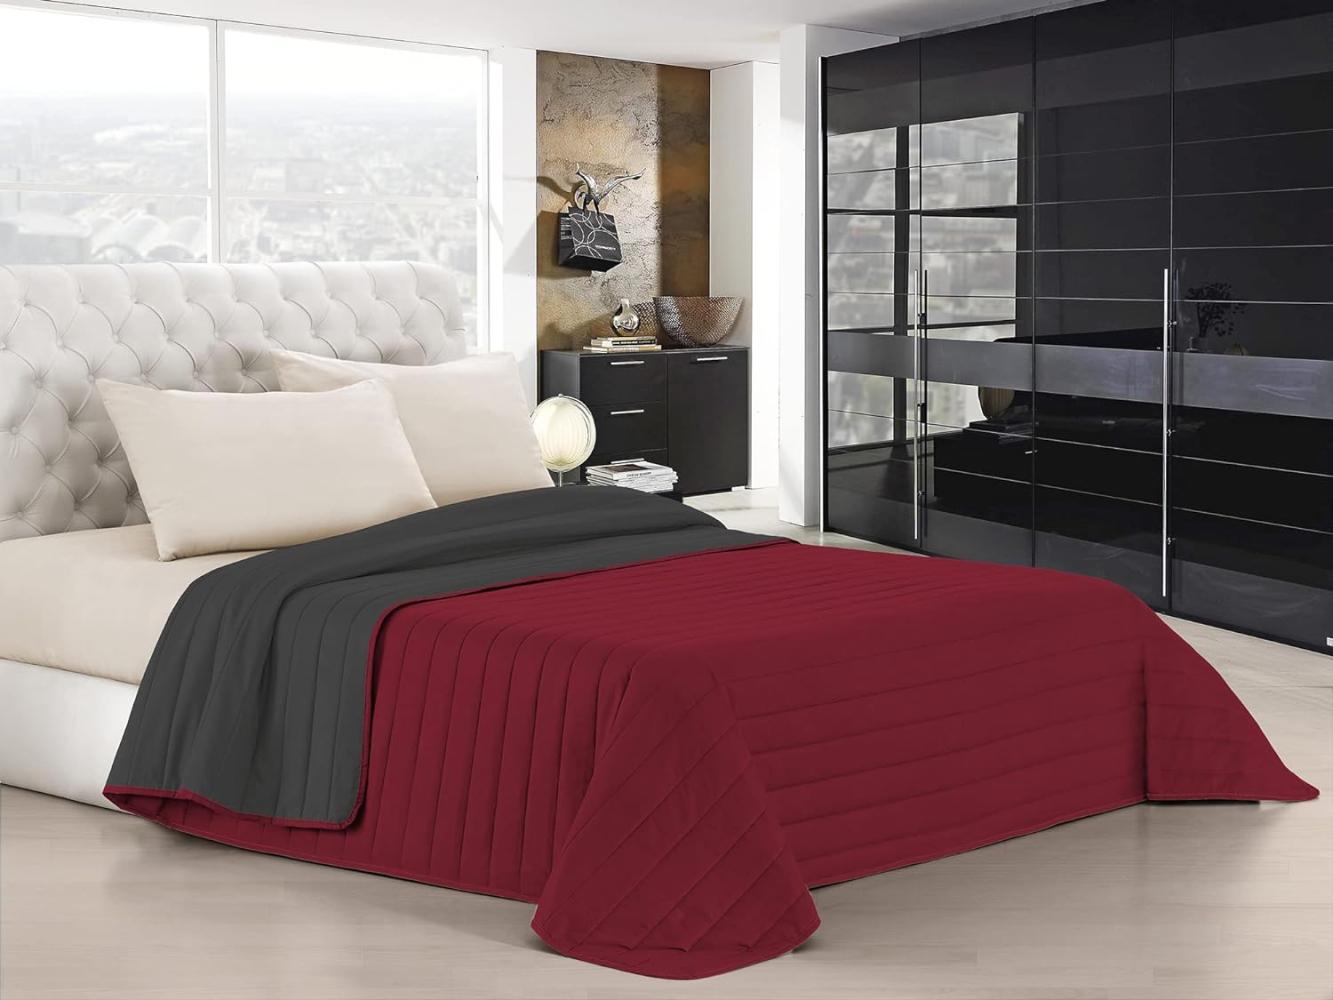 Italian Bed Linen Elegant Sommer Steppdecke bordeaux/dunkel grau, 100% Mikrofaser, 260x270cm Bild 1